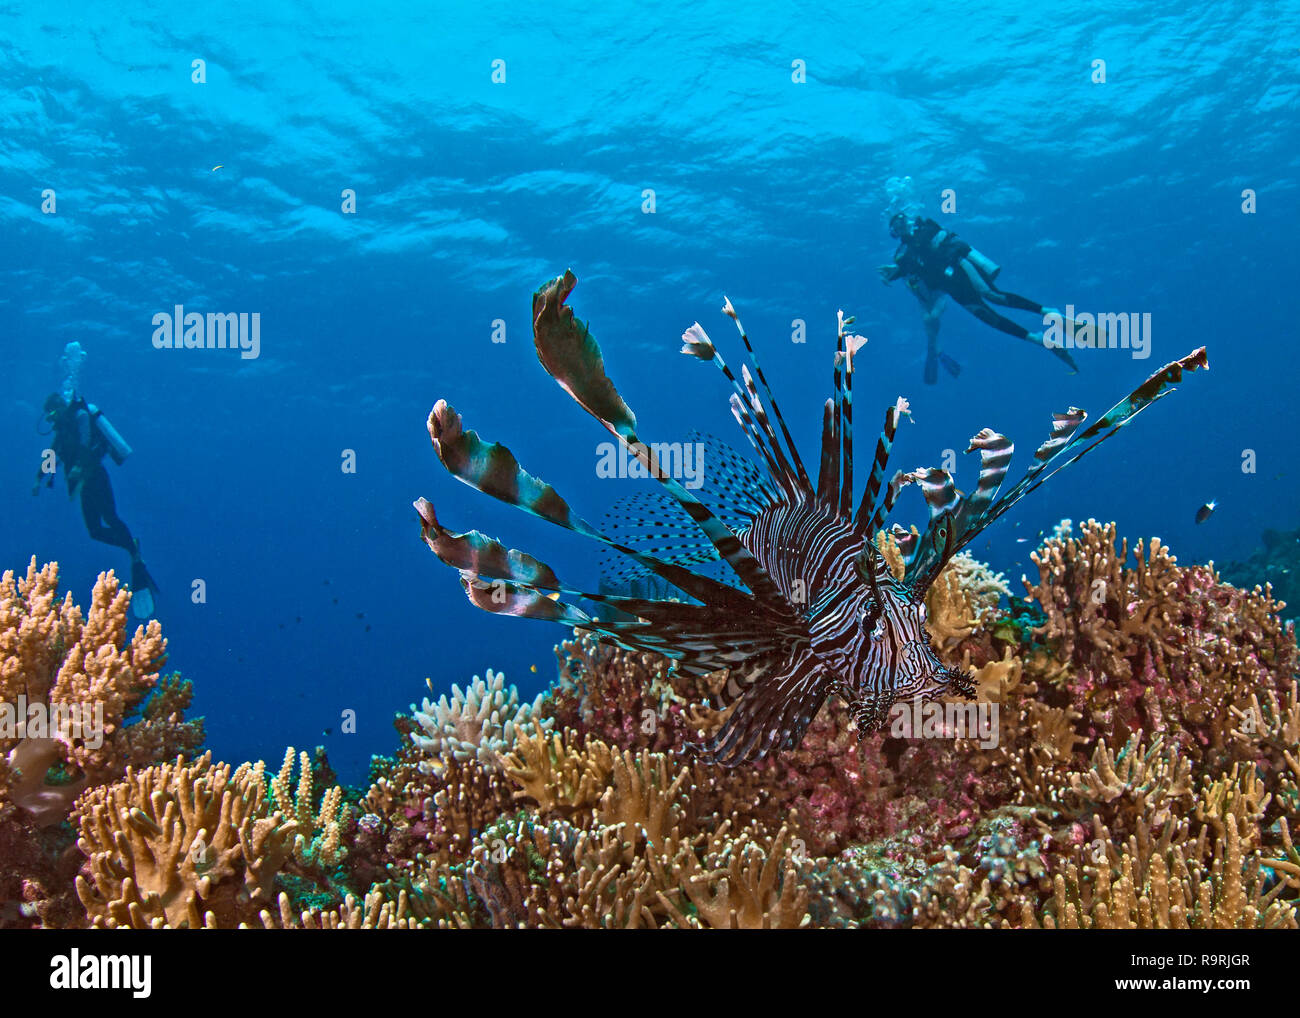 Schließen focus Weitwinkel- Bild der Feuerfische auf Korallenriff mit Taucher in blue water Hintergrund. Spratly Inseln im Südchinesischen Meer. Stockfoto